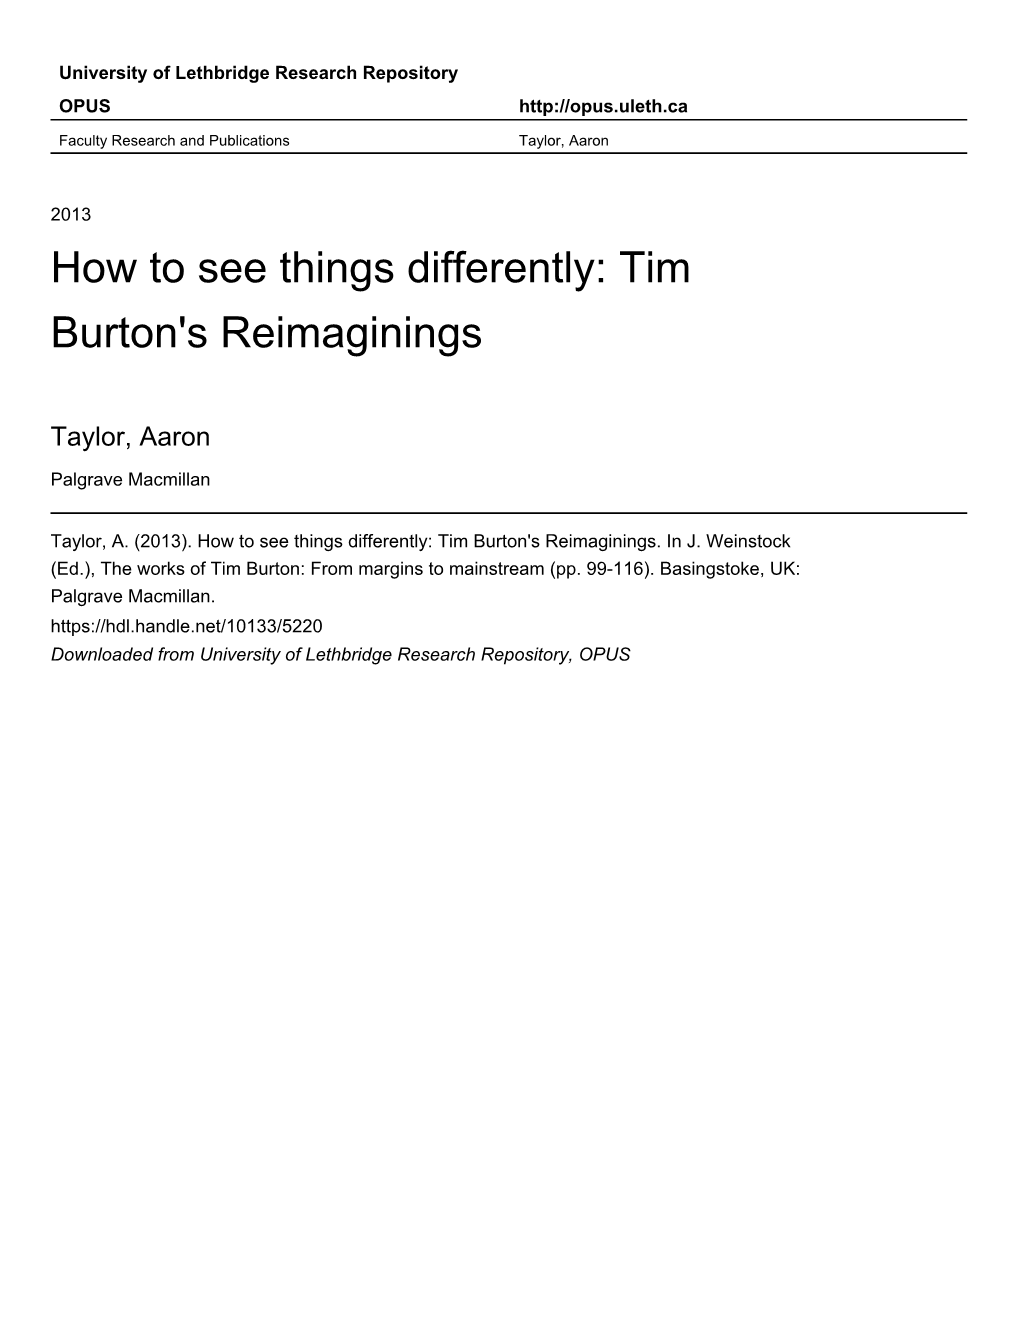 Tim Burton's Reimaginings